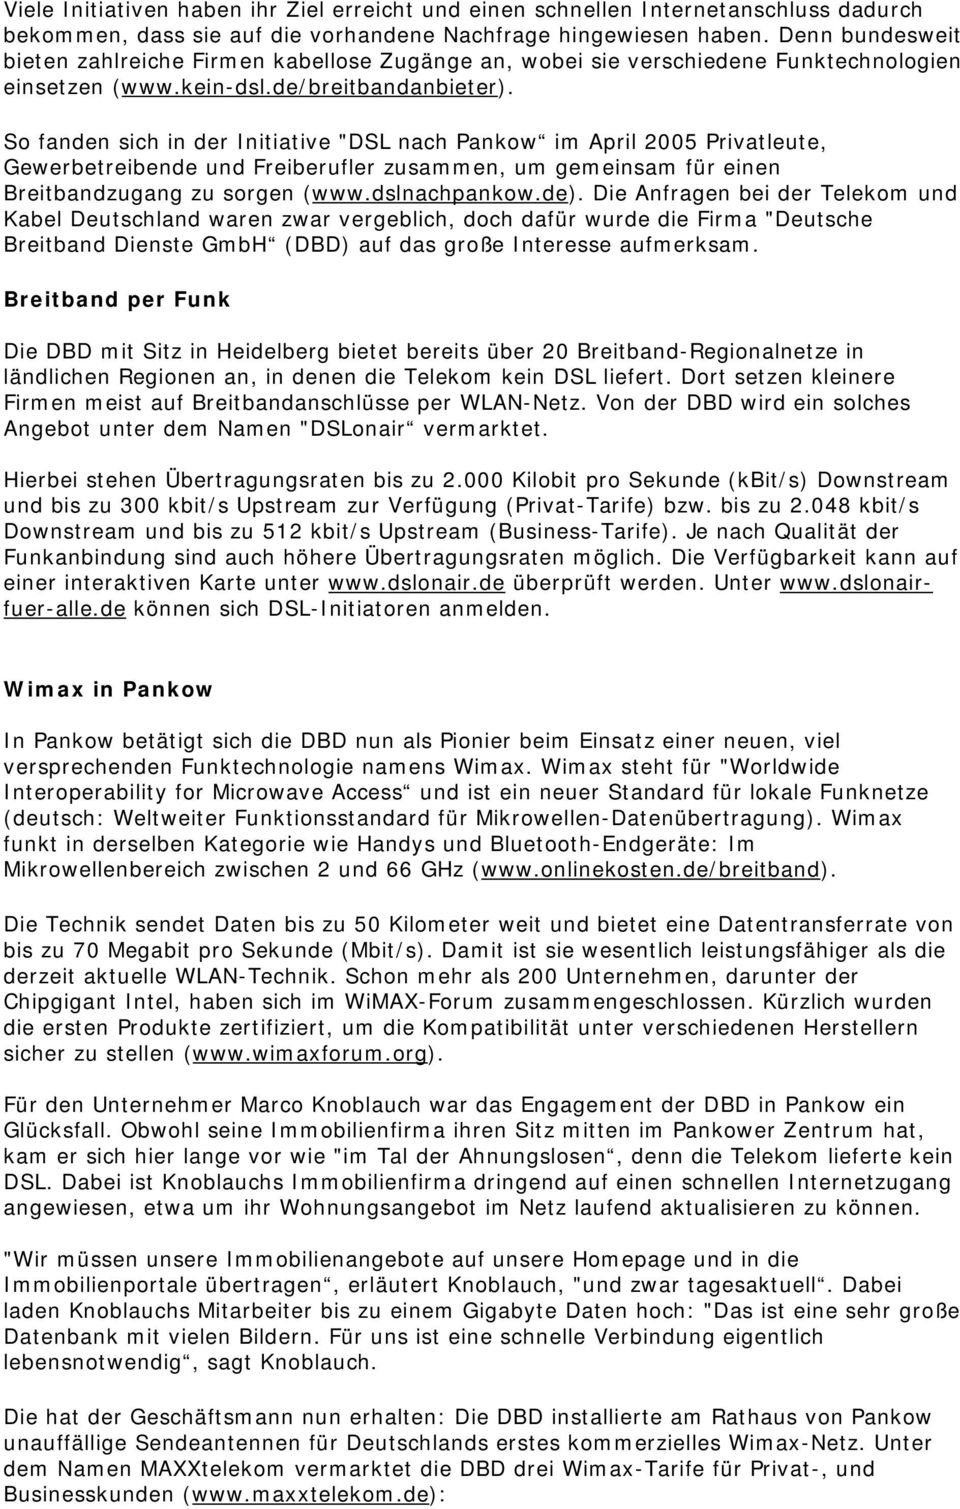 So fanden sich in der Initiative "DSL nach Pankow im April 2005 Privatleute, Gewerbetreibende und Freiberufler zusammen, um gemeinsam für einen Breitbandzugang zu sorgen (www.dslnachpankow.de).